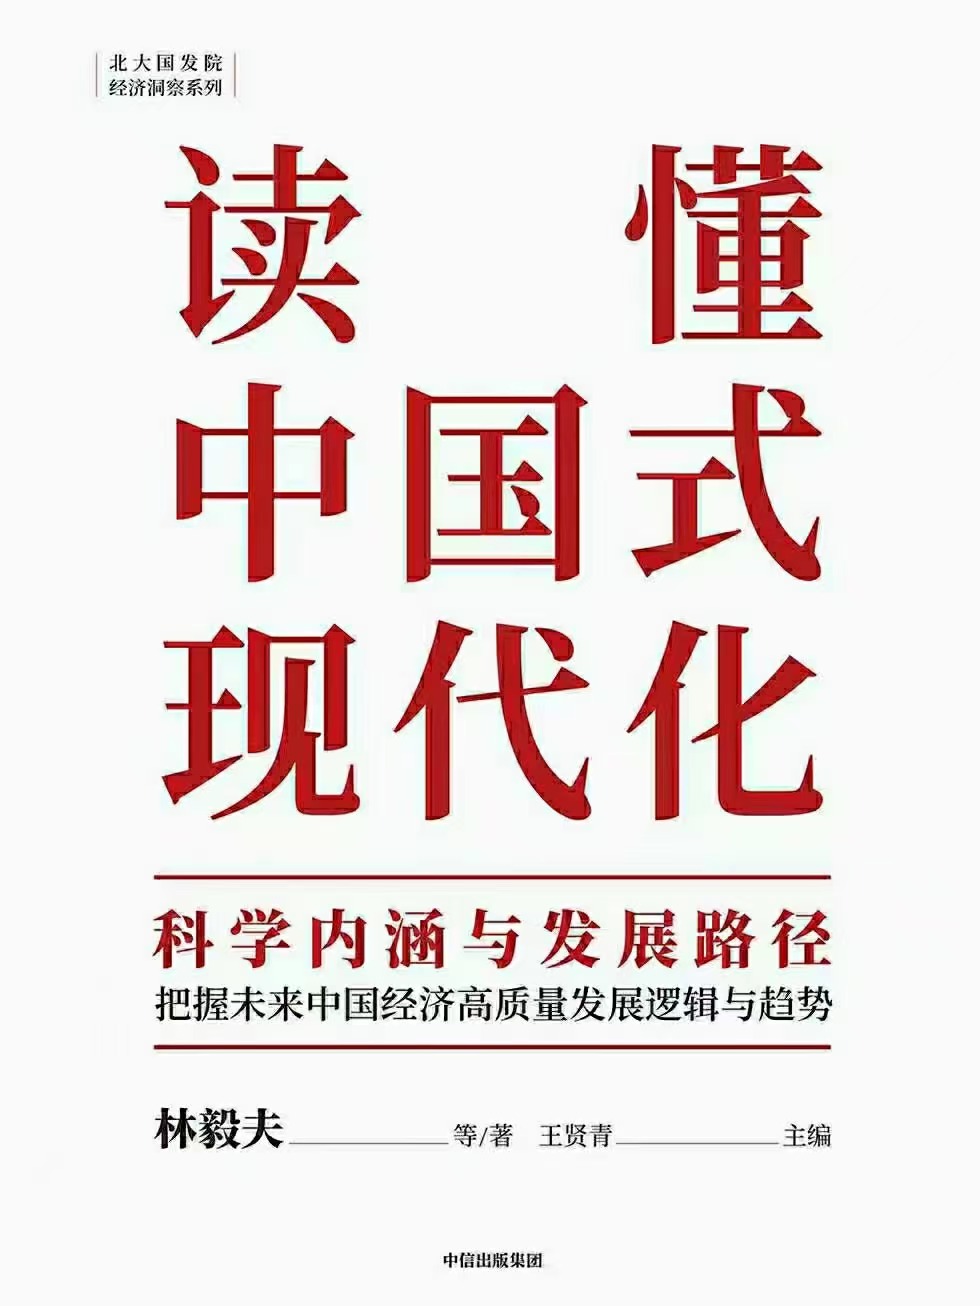 【电子书上新】 ★《读懂中国式现代化》 ~科学内涵与发展路径